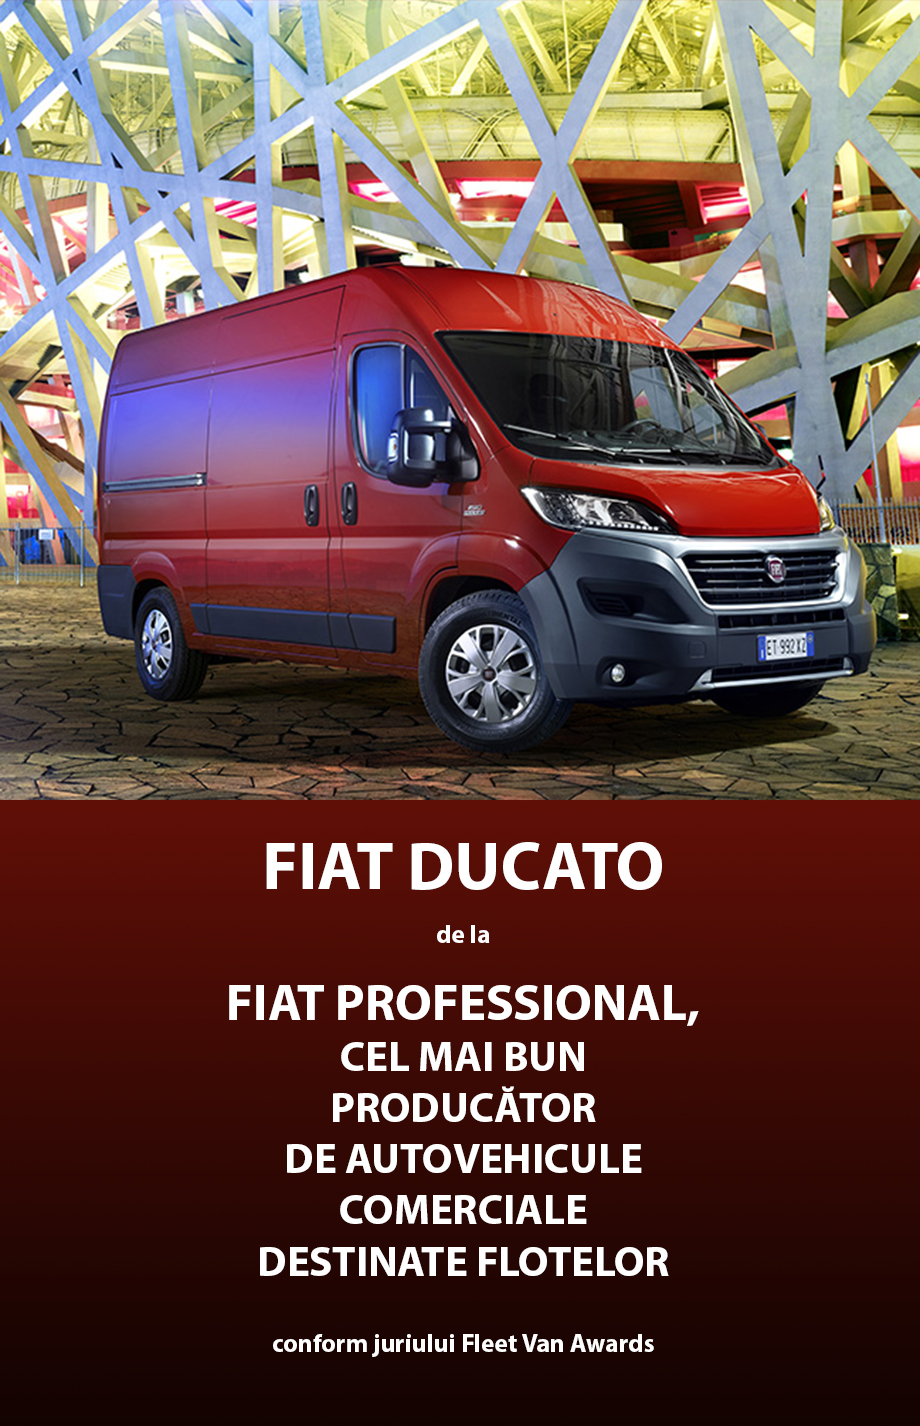 Oferta speciala Fiat Ducato